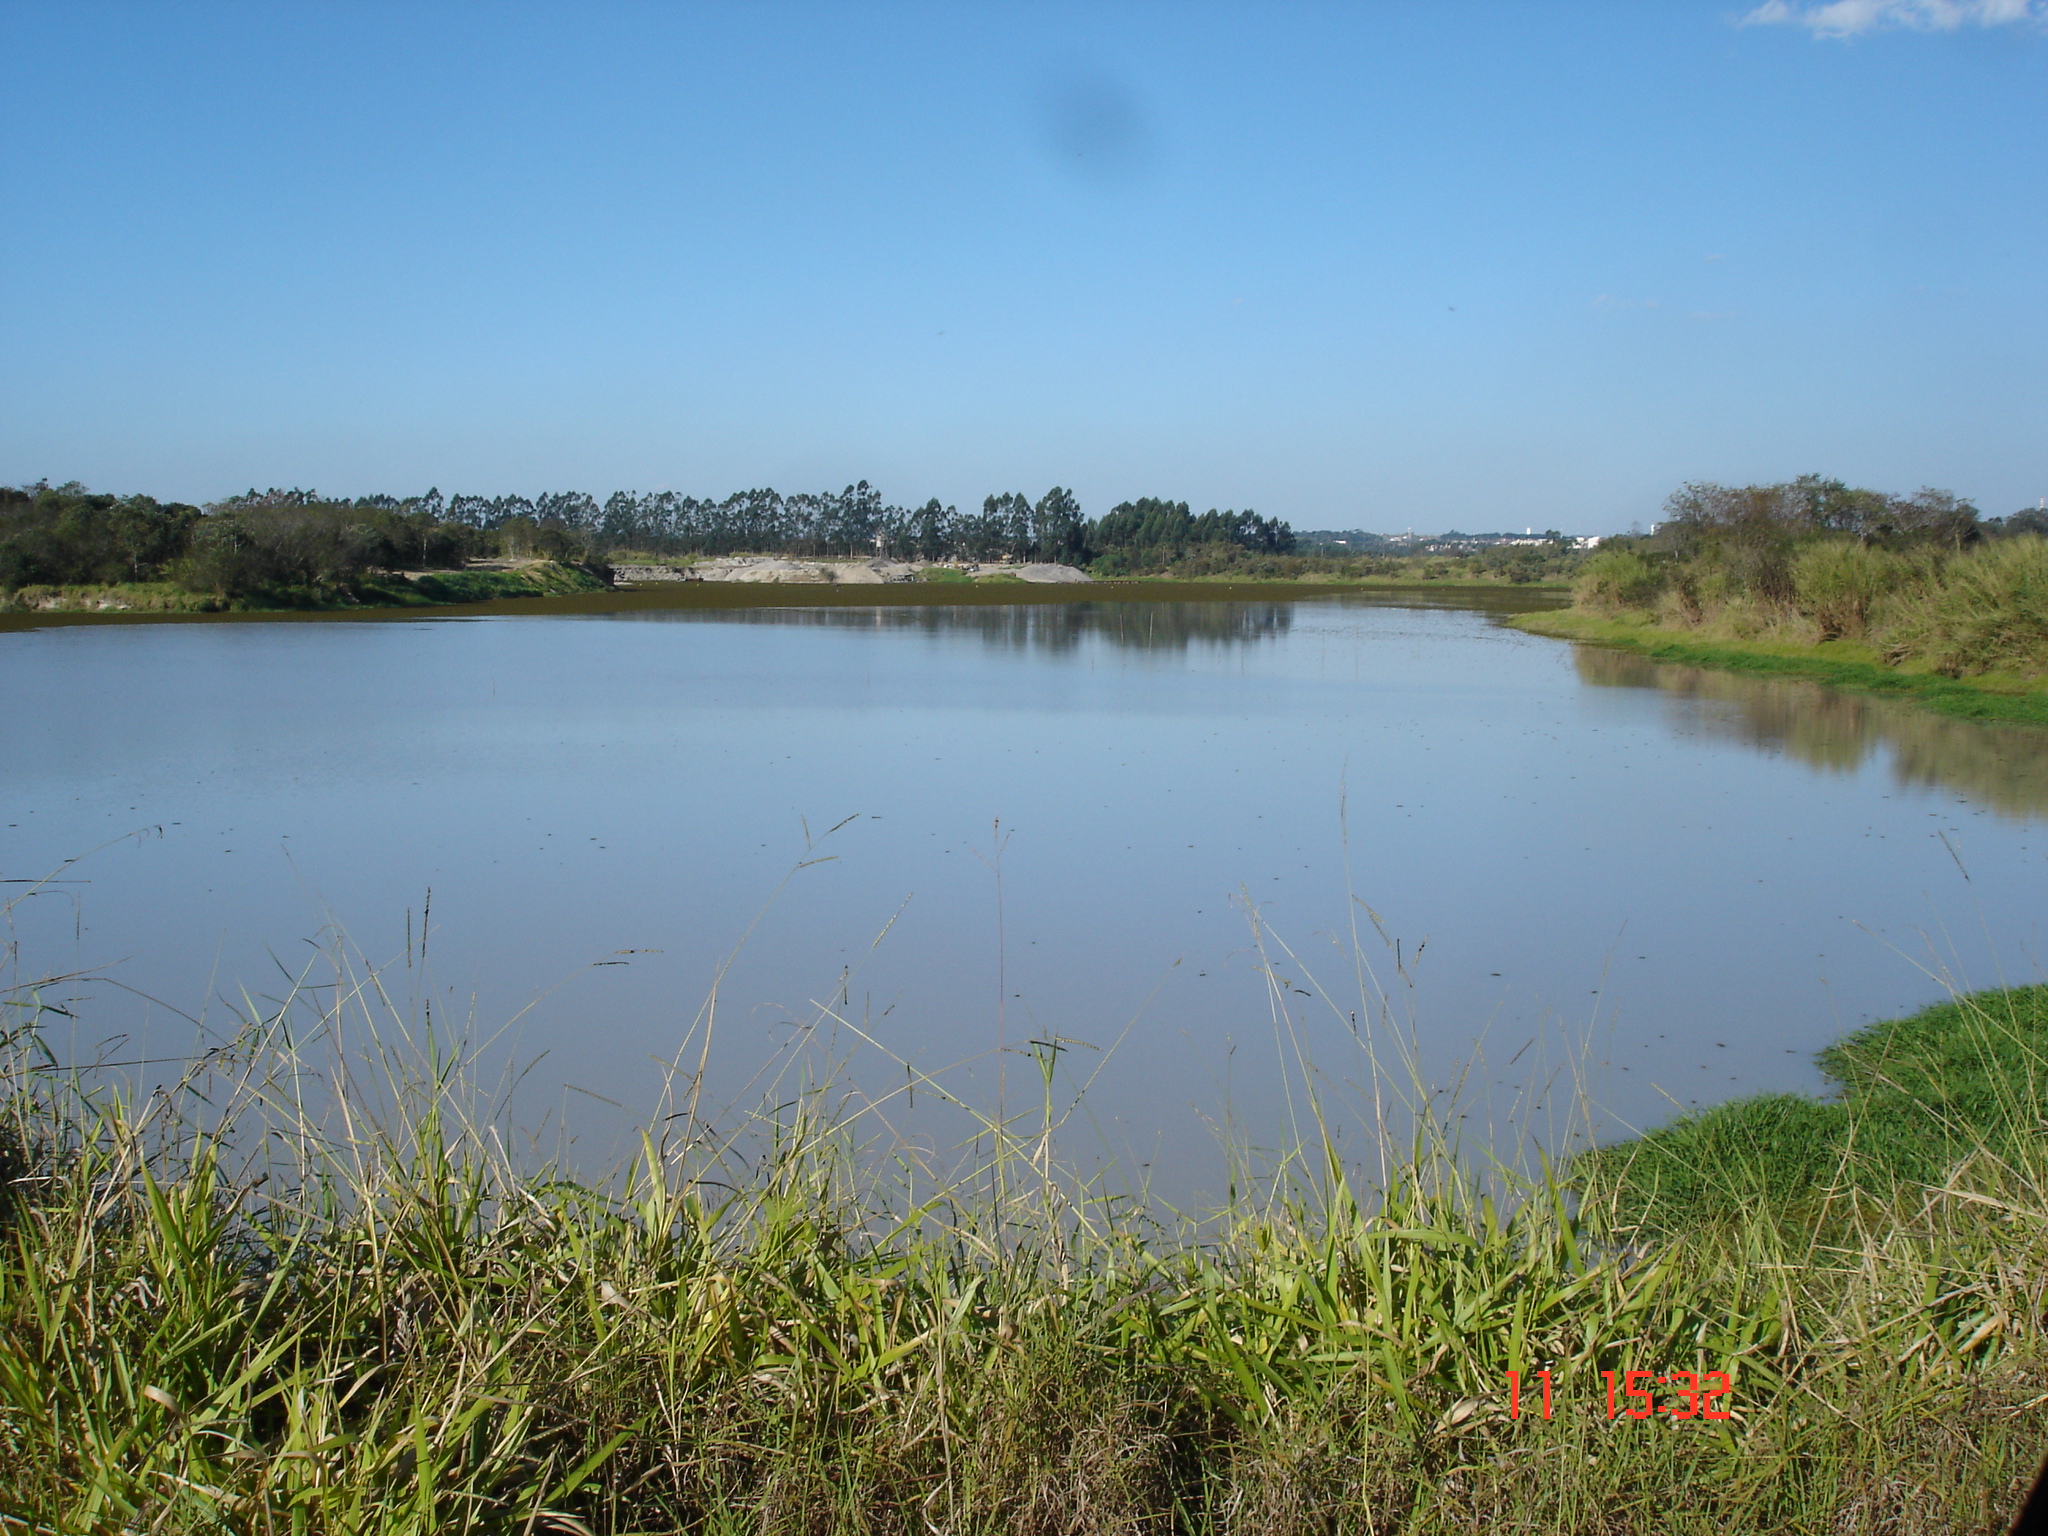 Fazenda Limoeiro, Vale do Paraíba (SP) -  Paisagem da propriedade